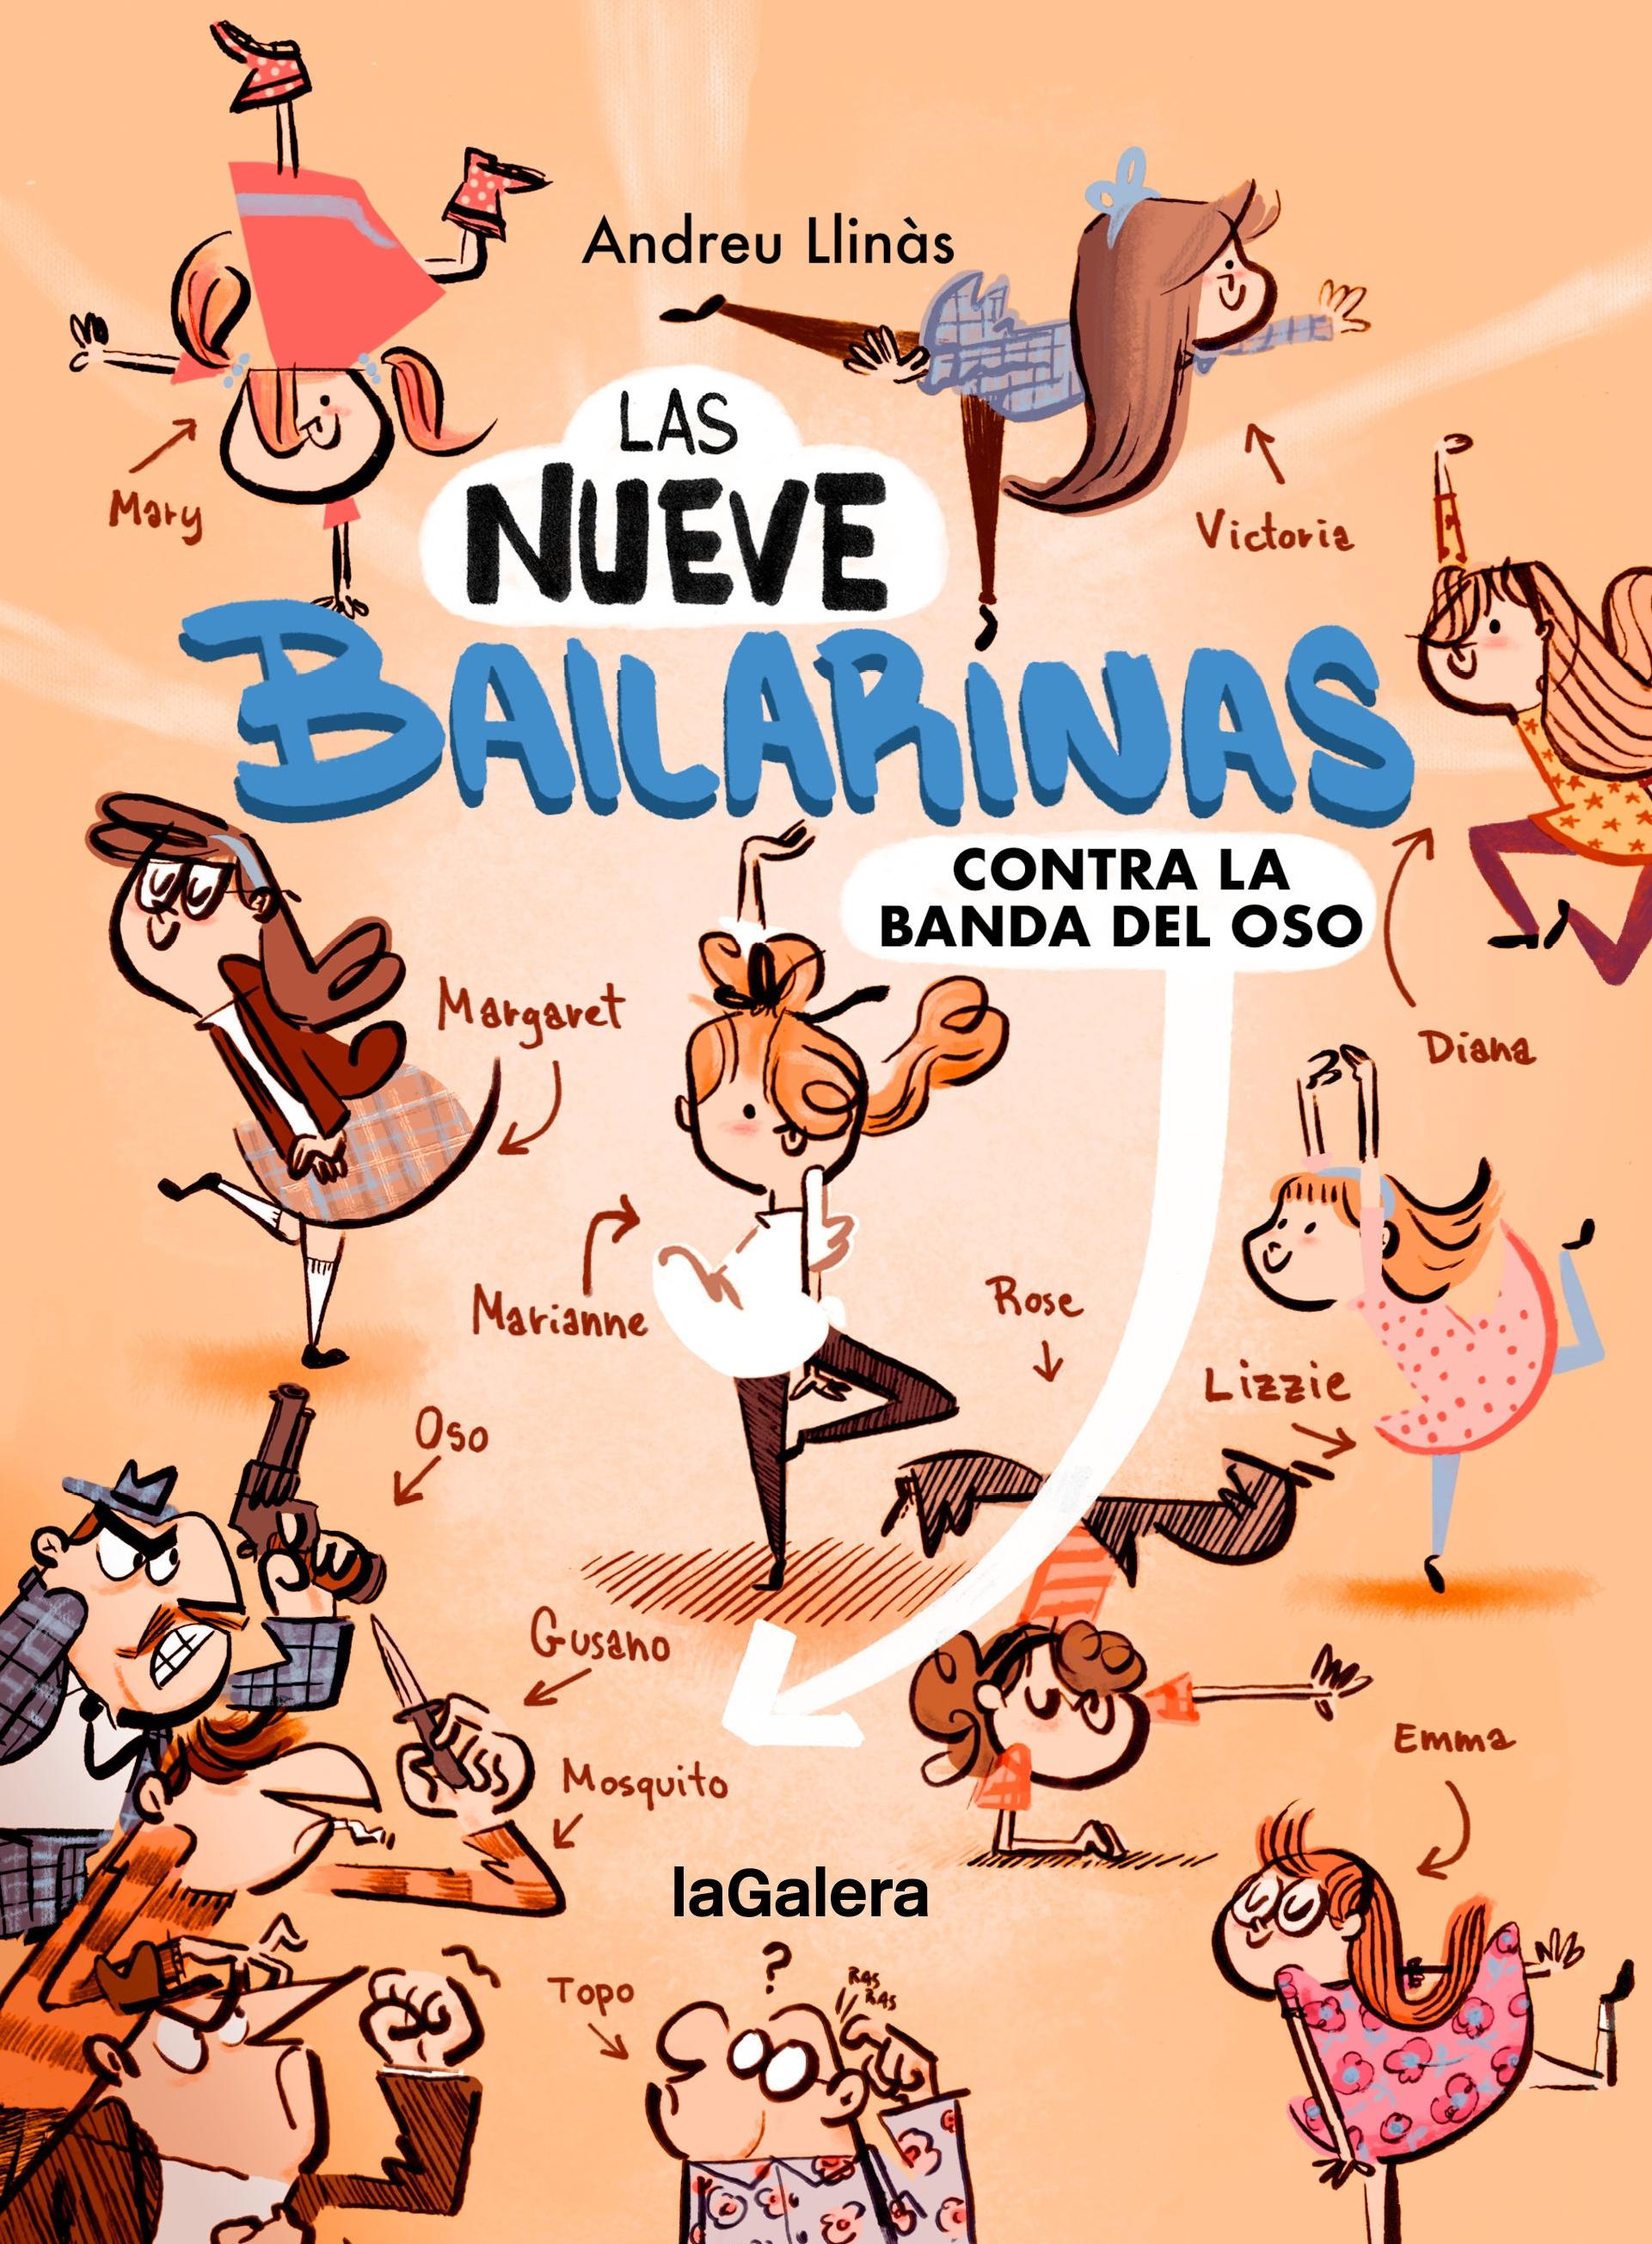 Las Nueve Bailarinas 1 "Contra la Banda del Oso "